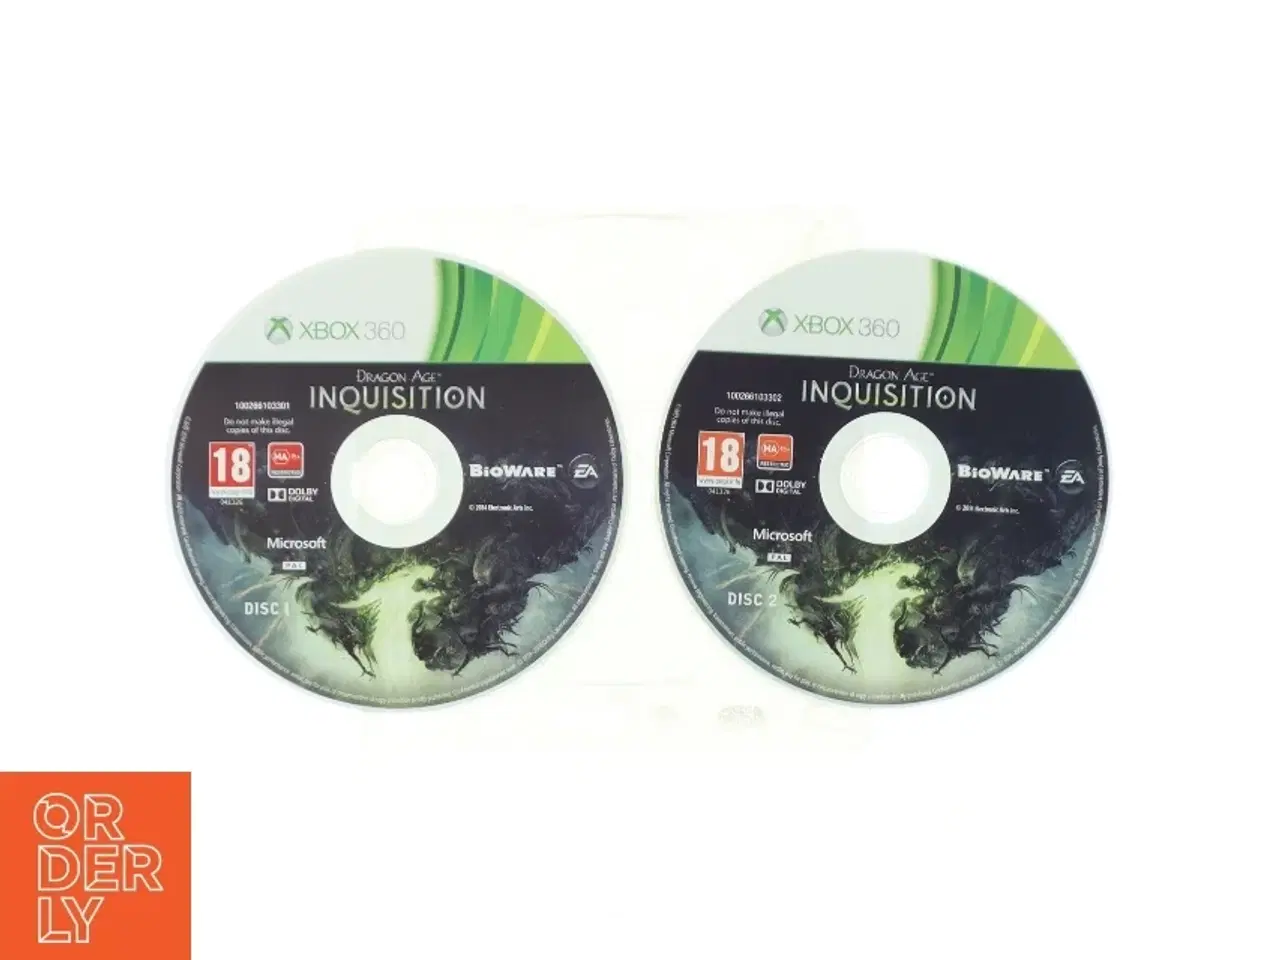 Billede 1 - Xbox 360 spil Dragon Age: Inquisition fra Microsoft